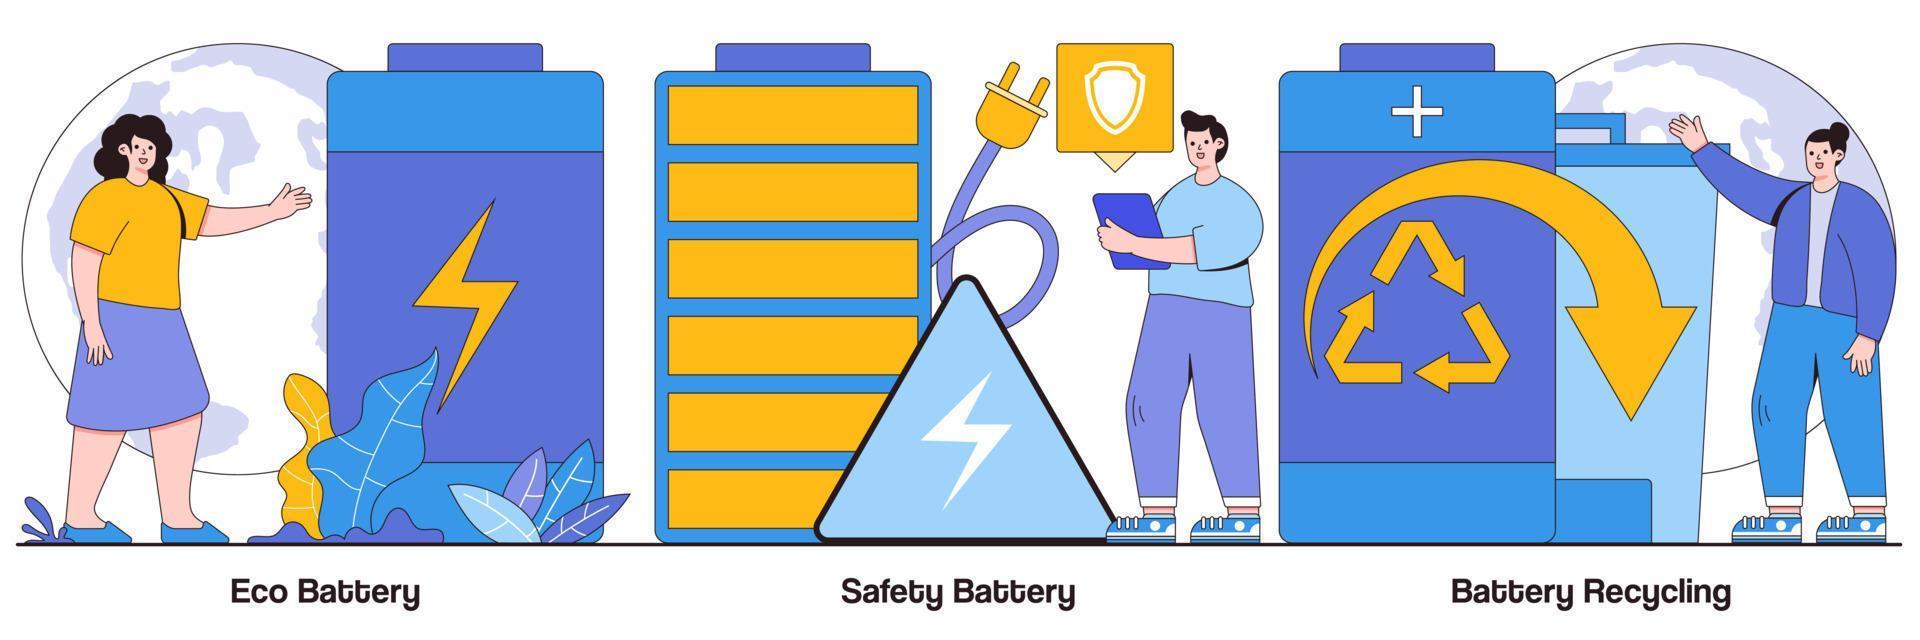 Öko-Batterie, Sicherheitsbatterie und Batterie-Recycling illustrierte Packung vektor